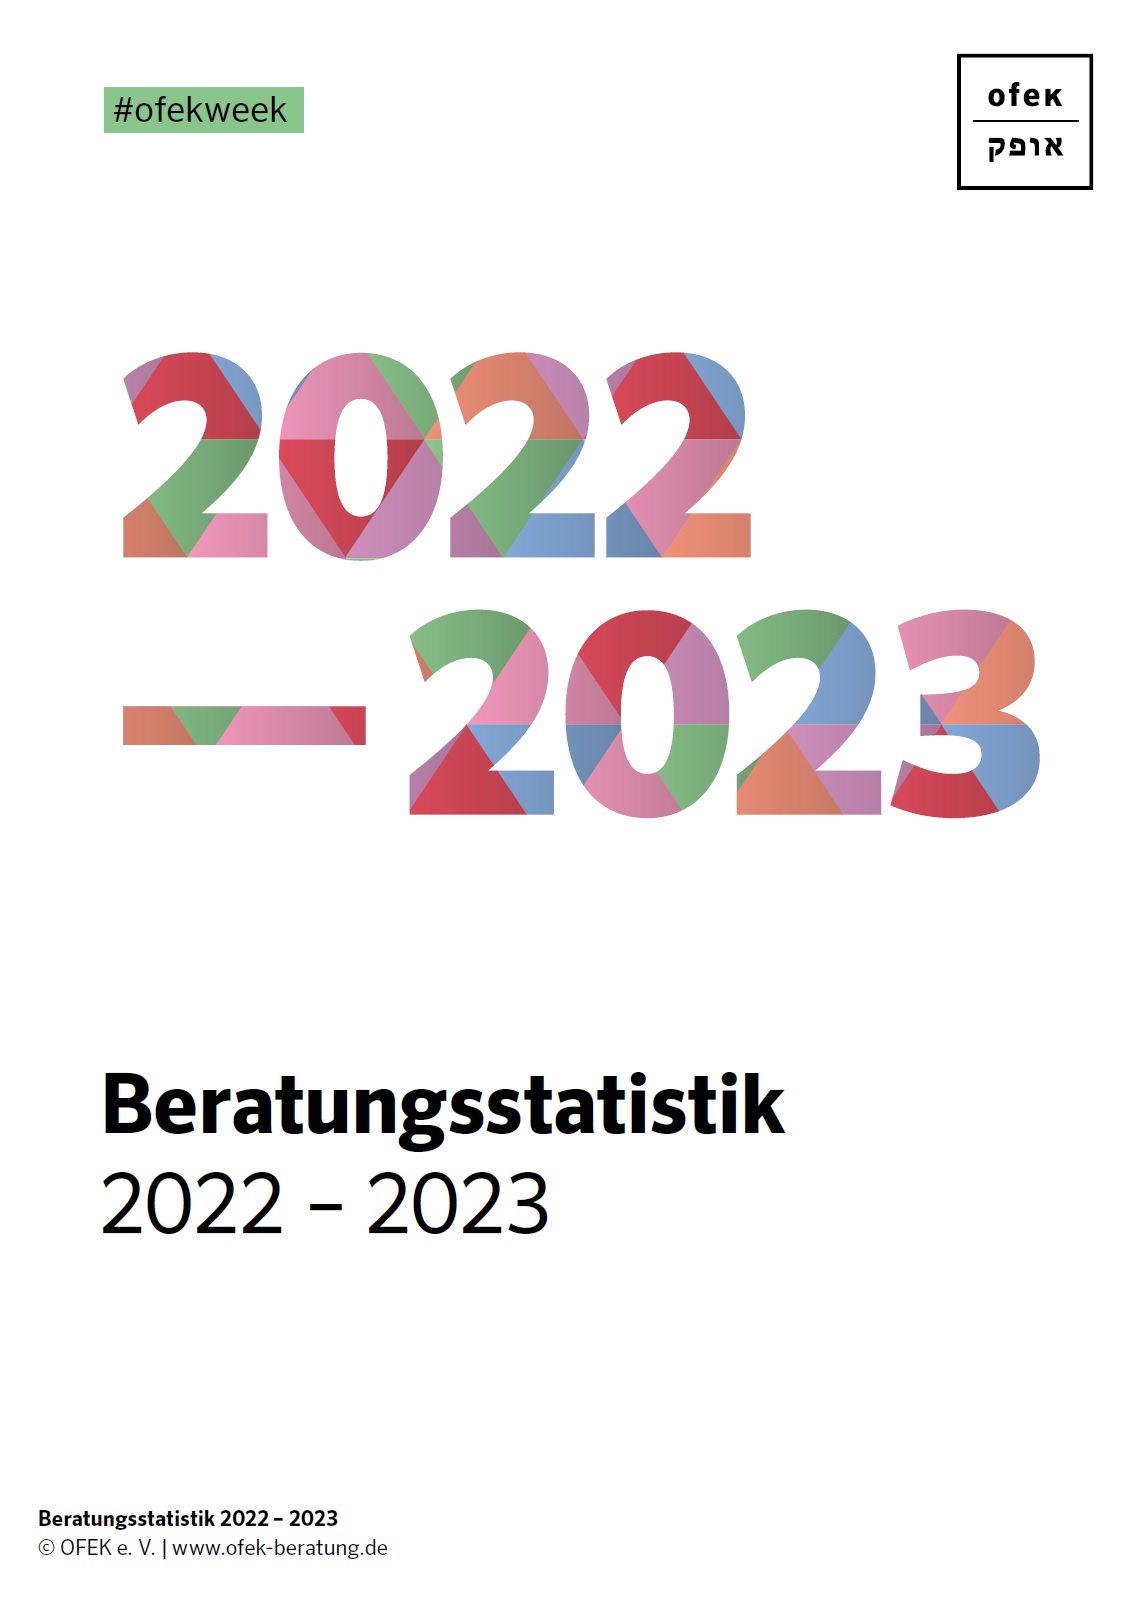 In unterschiedlich bunten Farben steht auf dem Bild 2022 -2023 und darunter mit schwarzer Schrift geschrieben steht ofek Beratungsstatistik 2022 – 2023